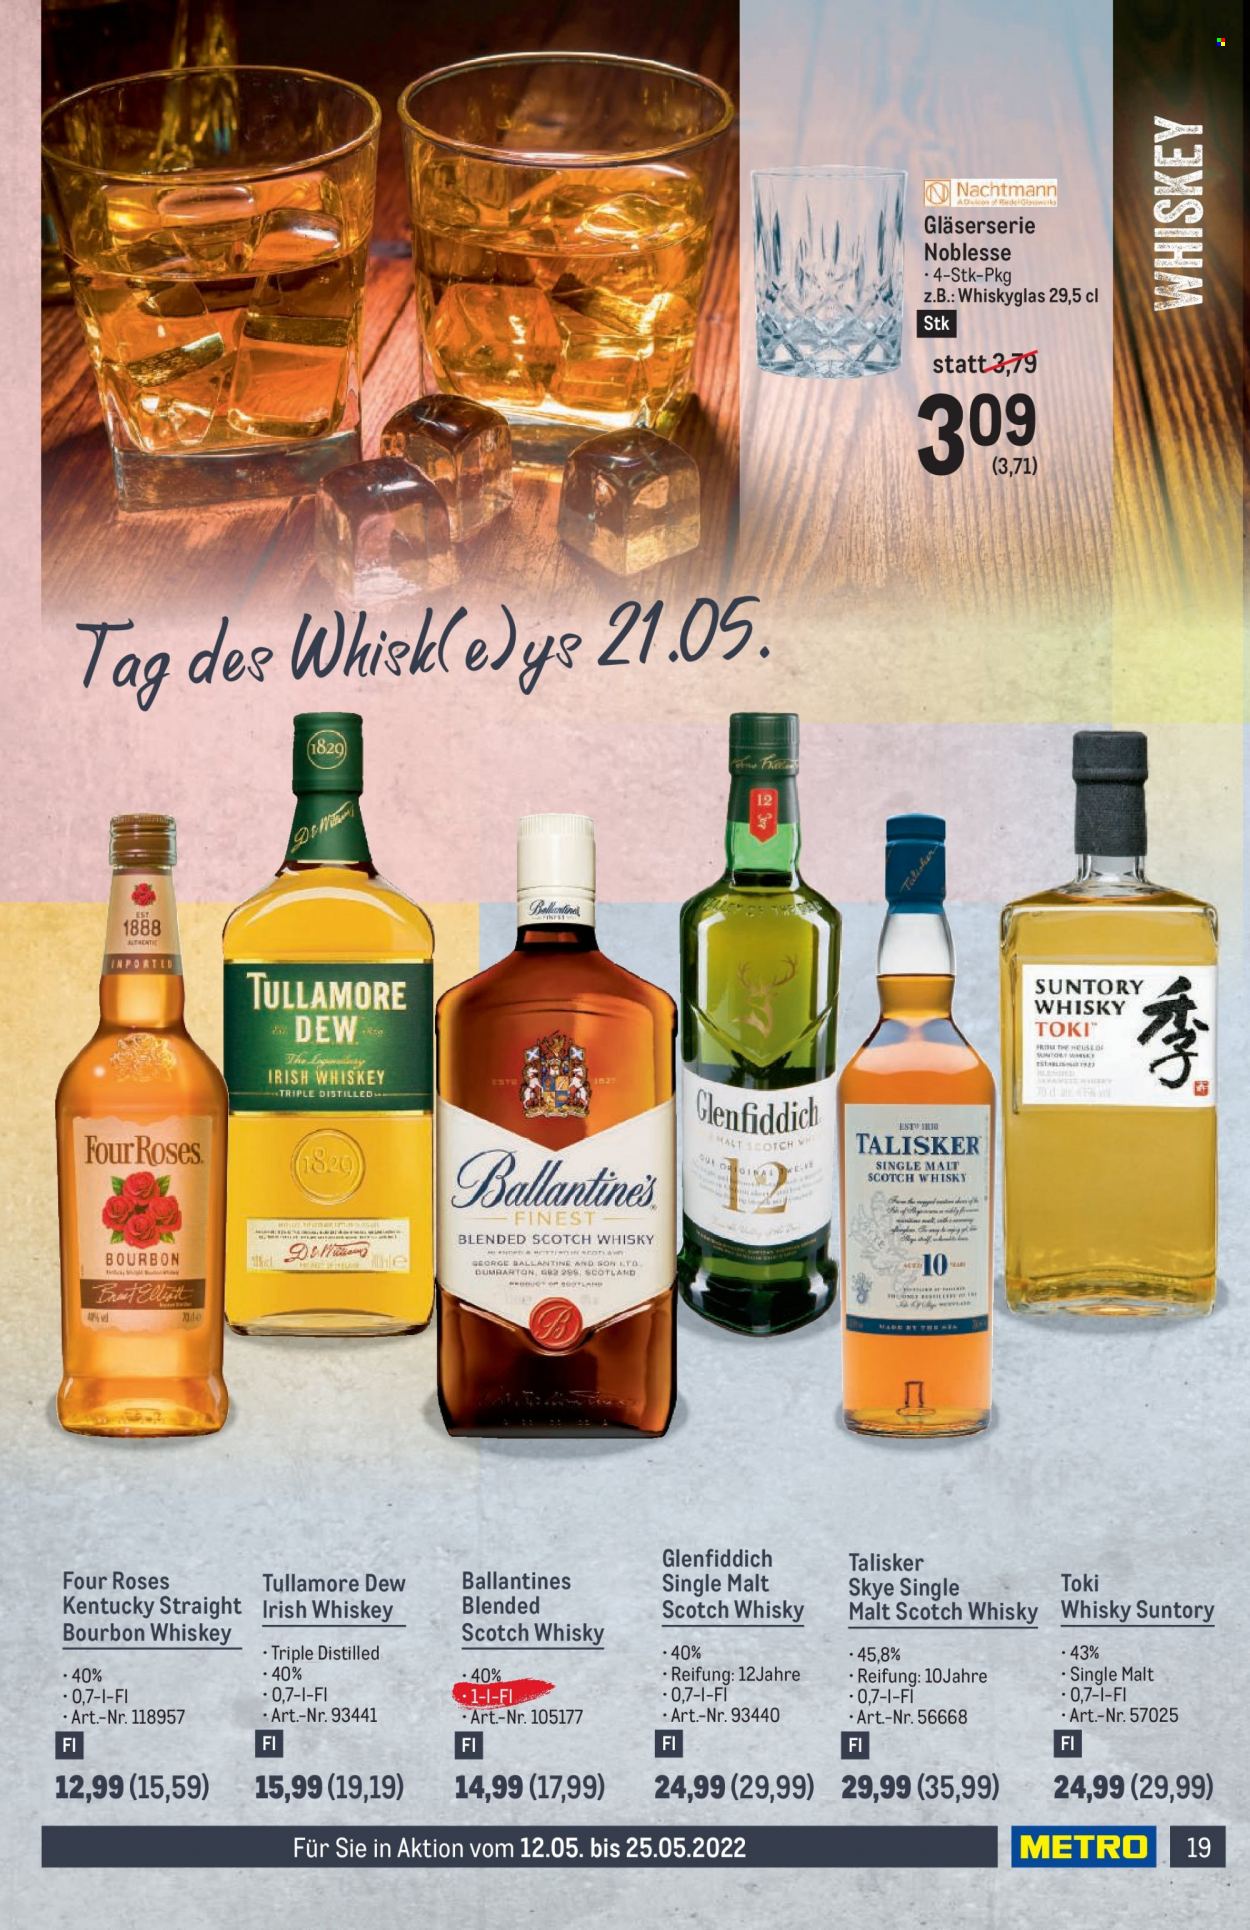 Angebote Metro - 12.5.2022 - 25.5.2022 - Verkaufsprodukte - Tee, Alkohol, Blended Scotch whisky, Bourbon, Single Malt, Scotch Whisky, Irish Whiskey, Bourbon whiskey, Ballantine's, Tullamore Dew, Whiskyglas, Gläser. Seite 19.